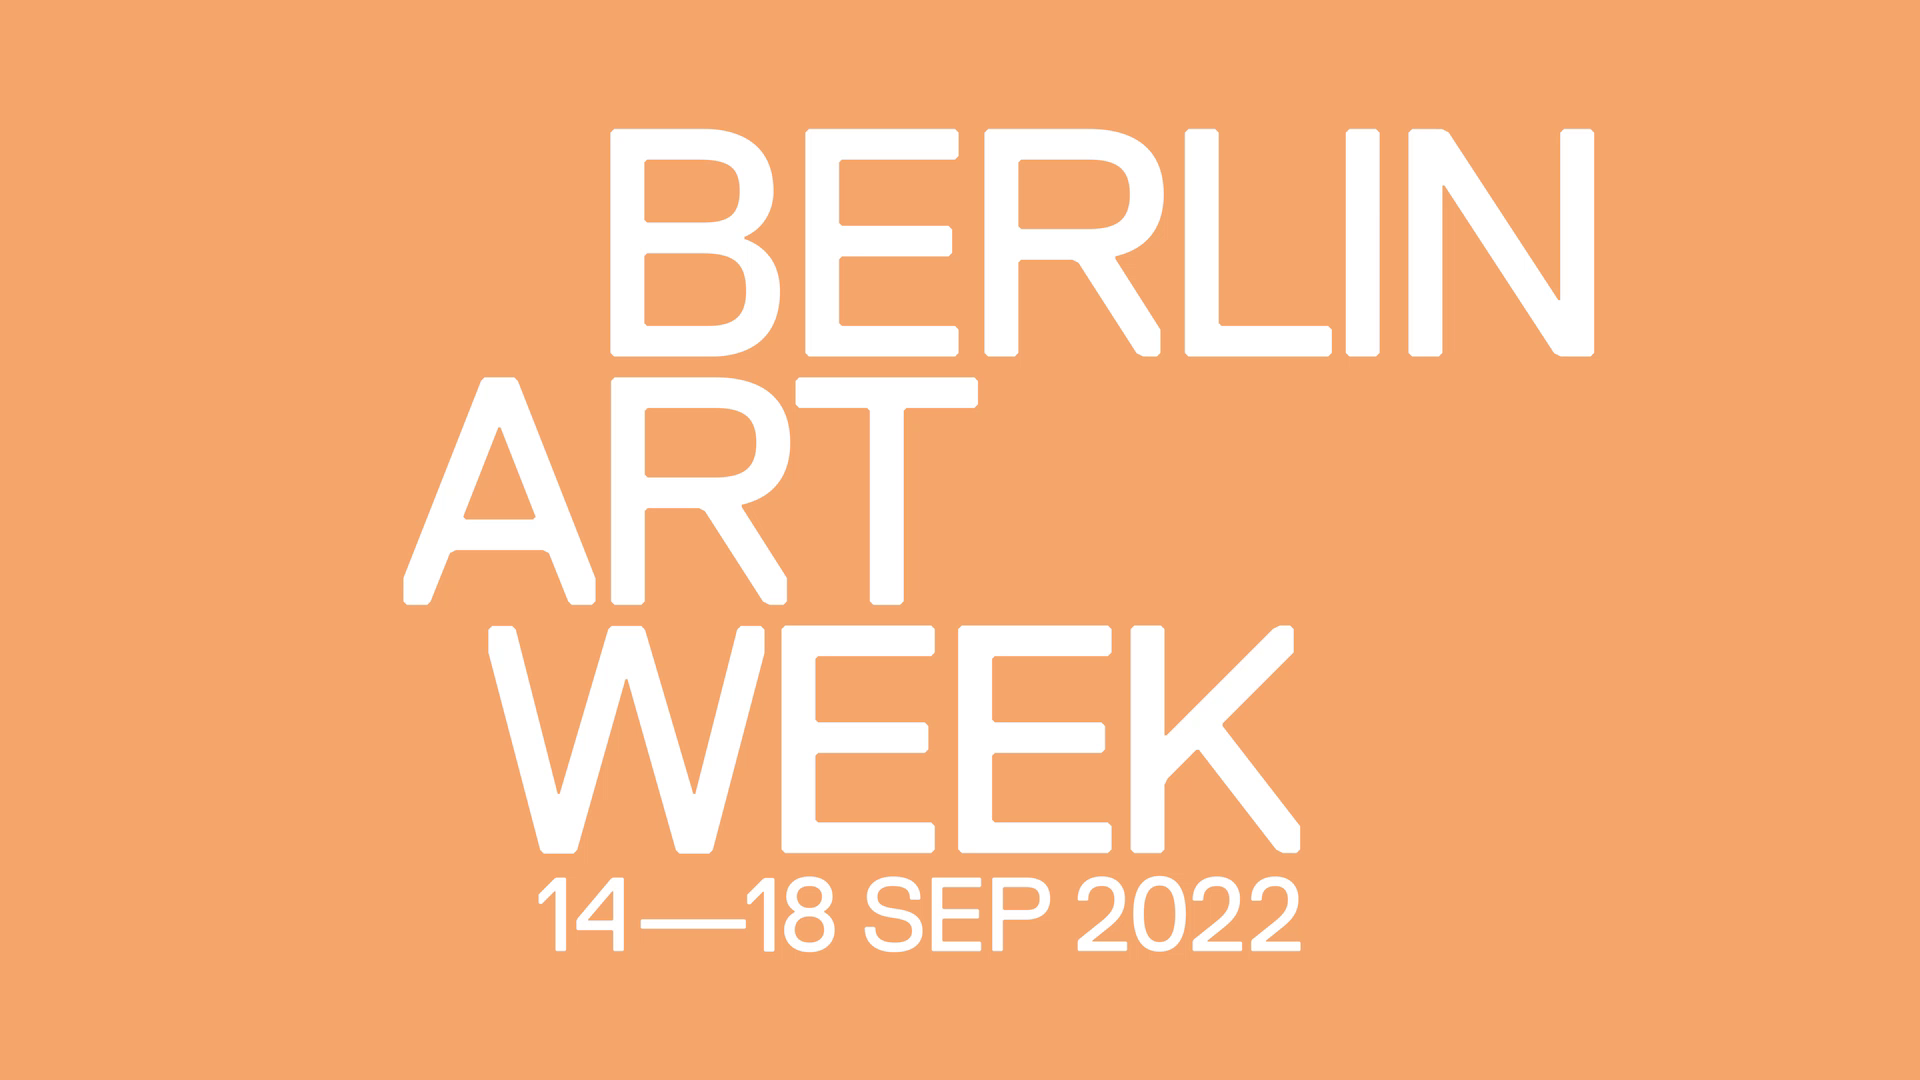 Berlin Art Week Kulturprojekte Berlin